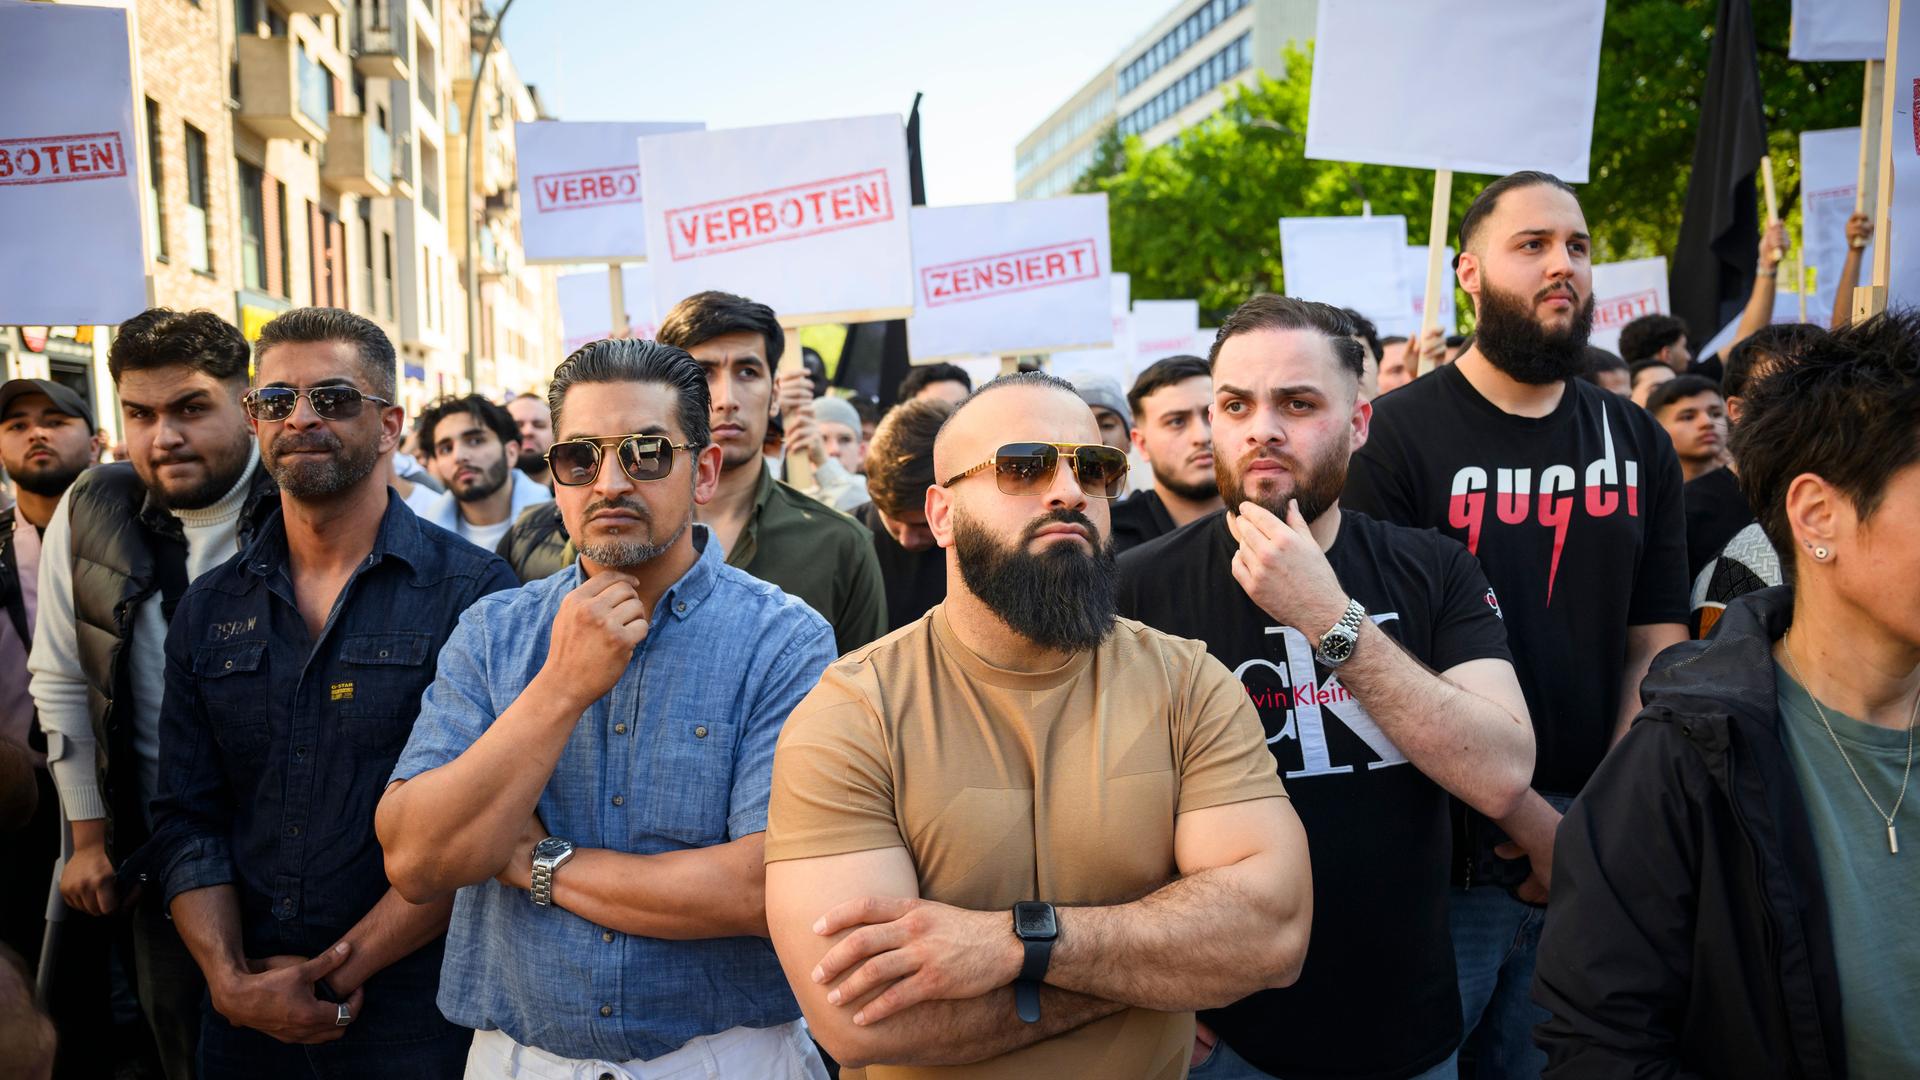 Zu sehen sind islamistische Demonstranten in Hamburg. Sie tragen Schilder mit den Aufdrucken "Verboten" und "Zensiert" auf einer Kundgebung des islamistischen Netzwerks Muslim Interaktiv.